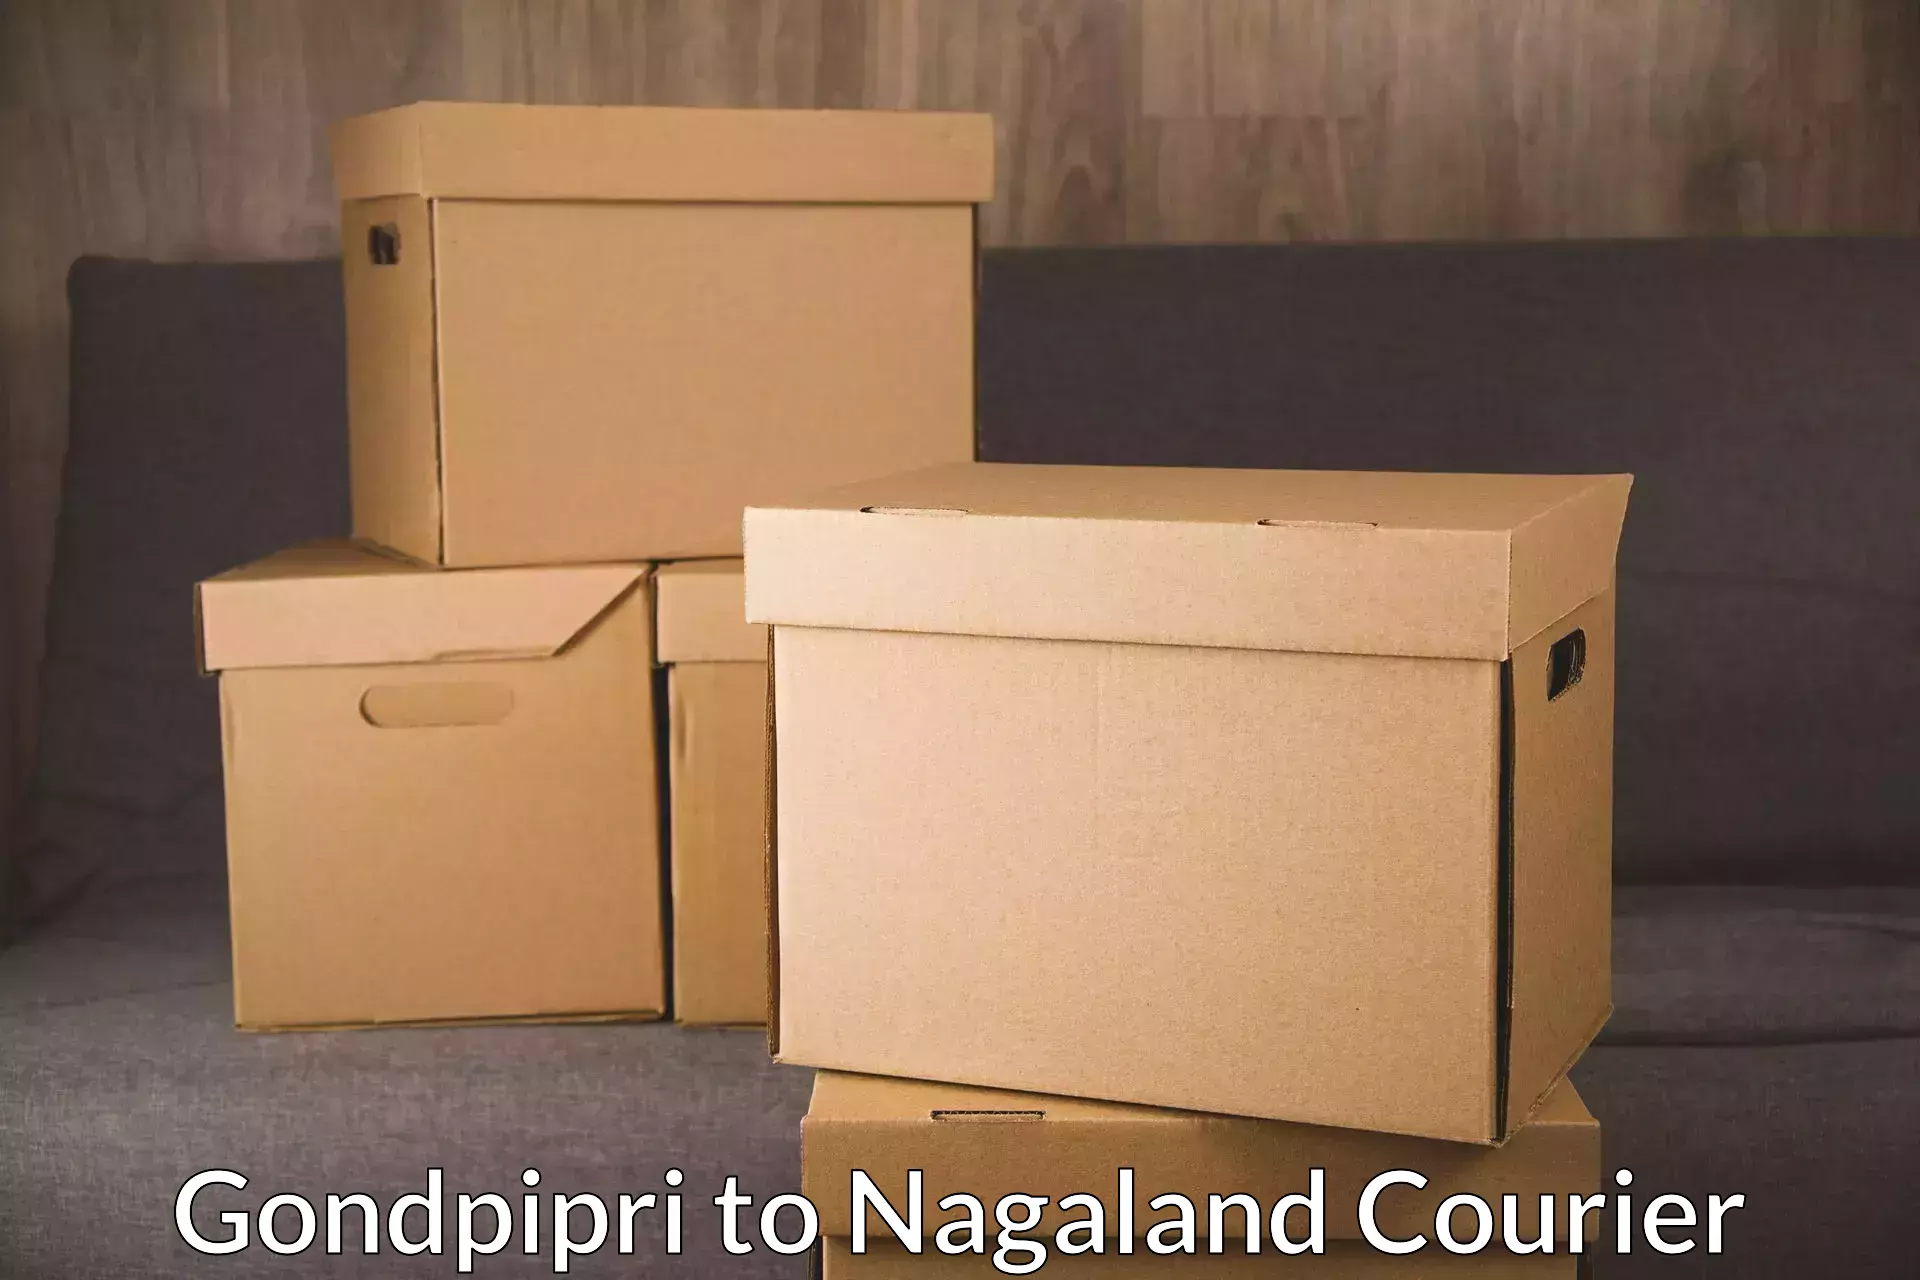 Overnight delivery services Gondpipri to Dimapur